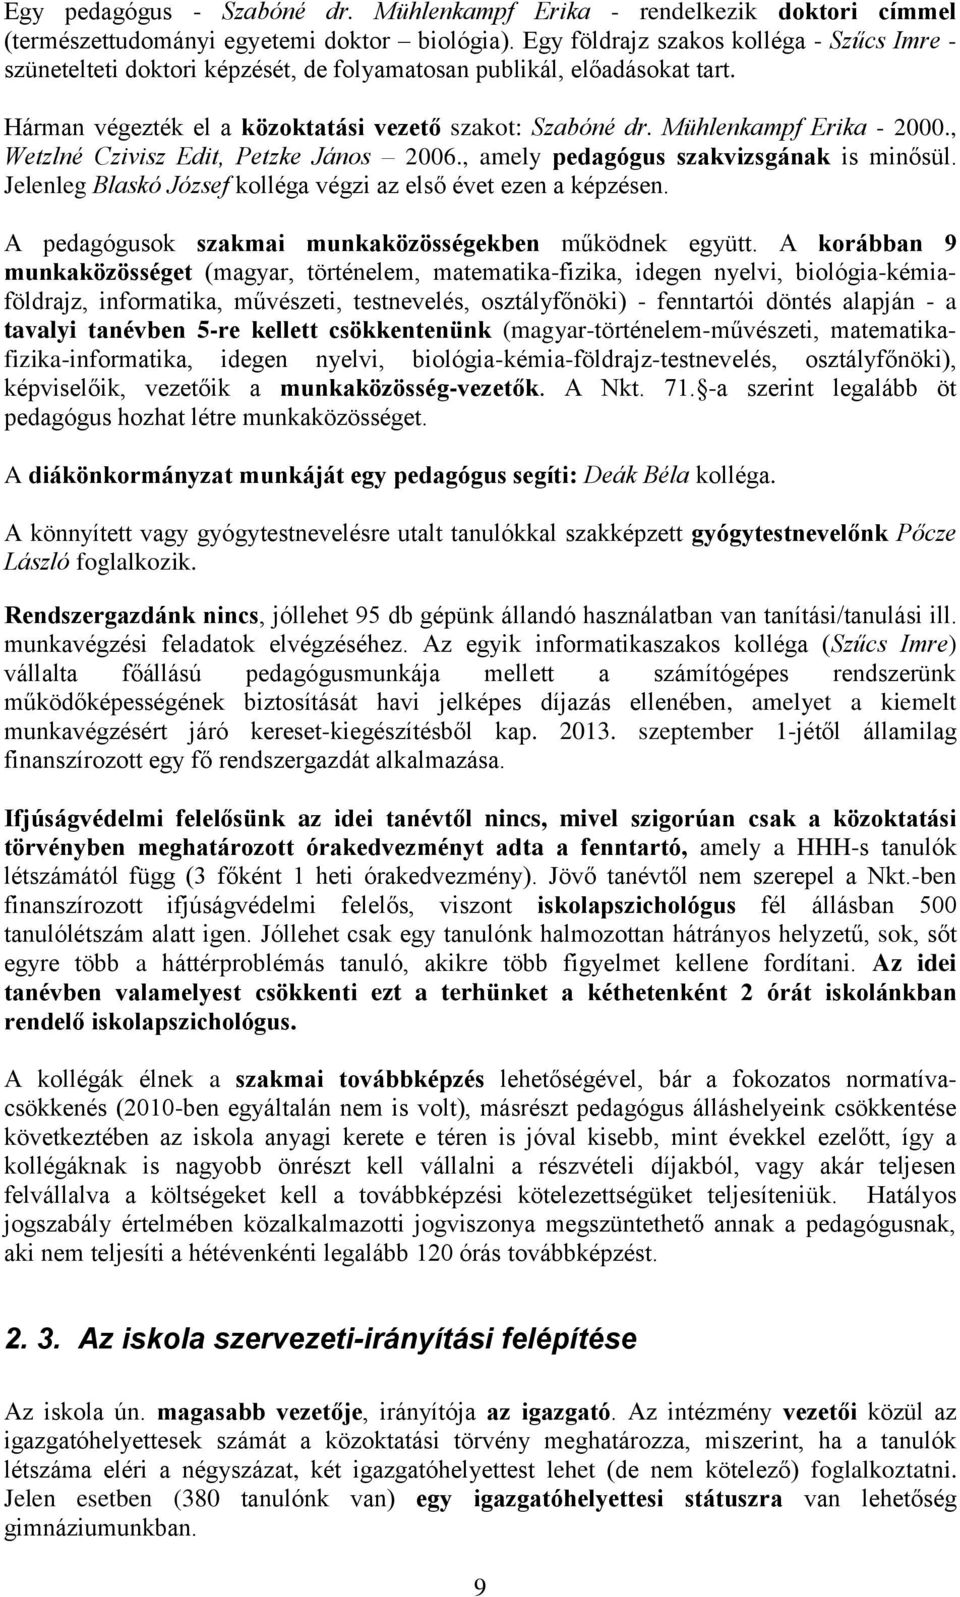 Mühlenkampf Erika - 2000., Wetzlné Czivisz Edit, Petzke János 2006., amely pedagógus szakvizsgának is minősül. Jelenleg Blaskó József kolléga végzi az első évet ezen a képzésen.